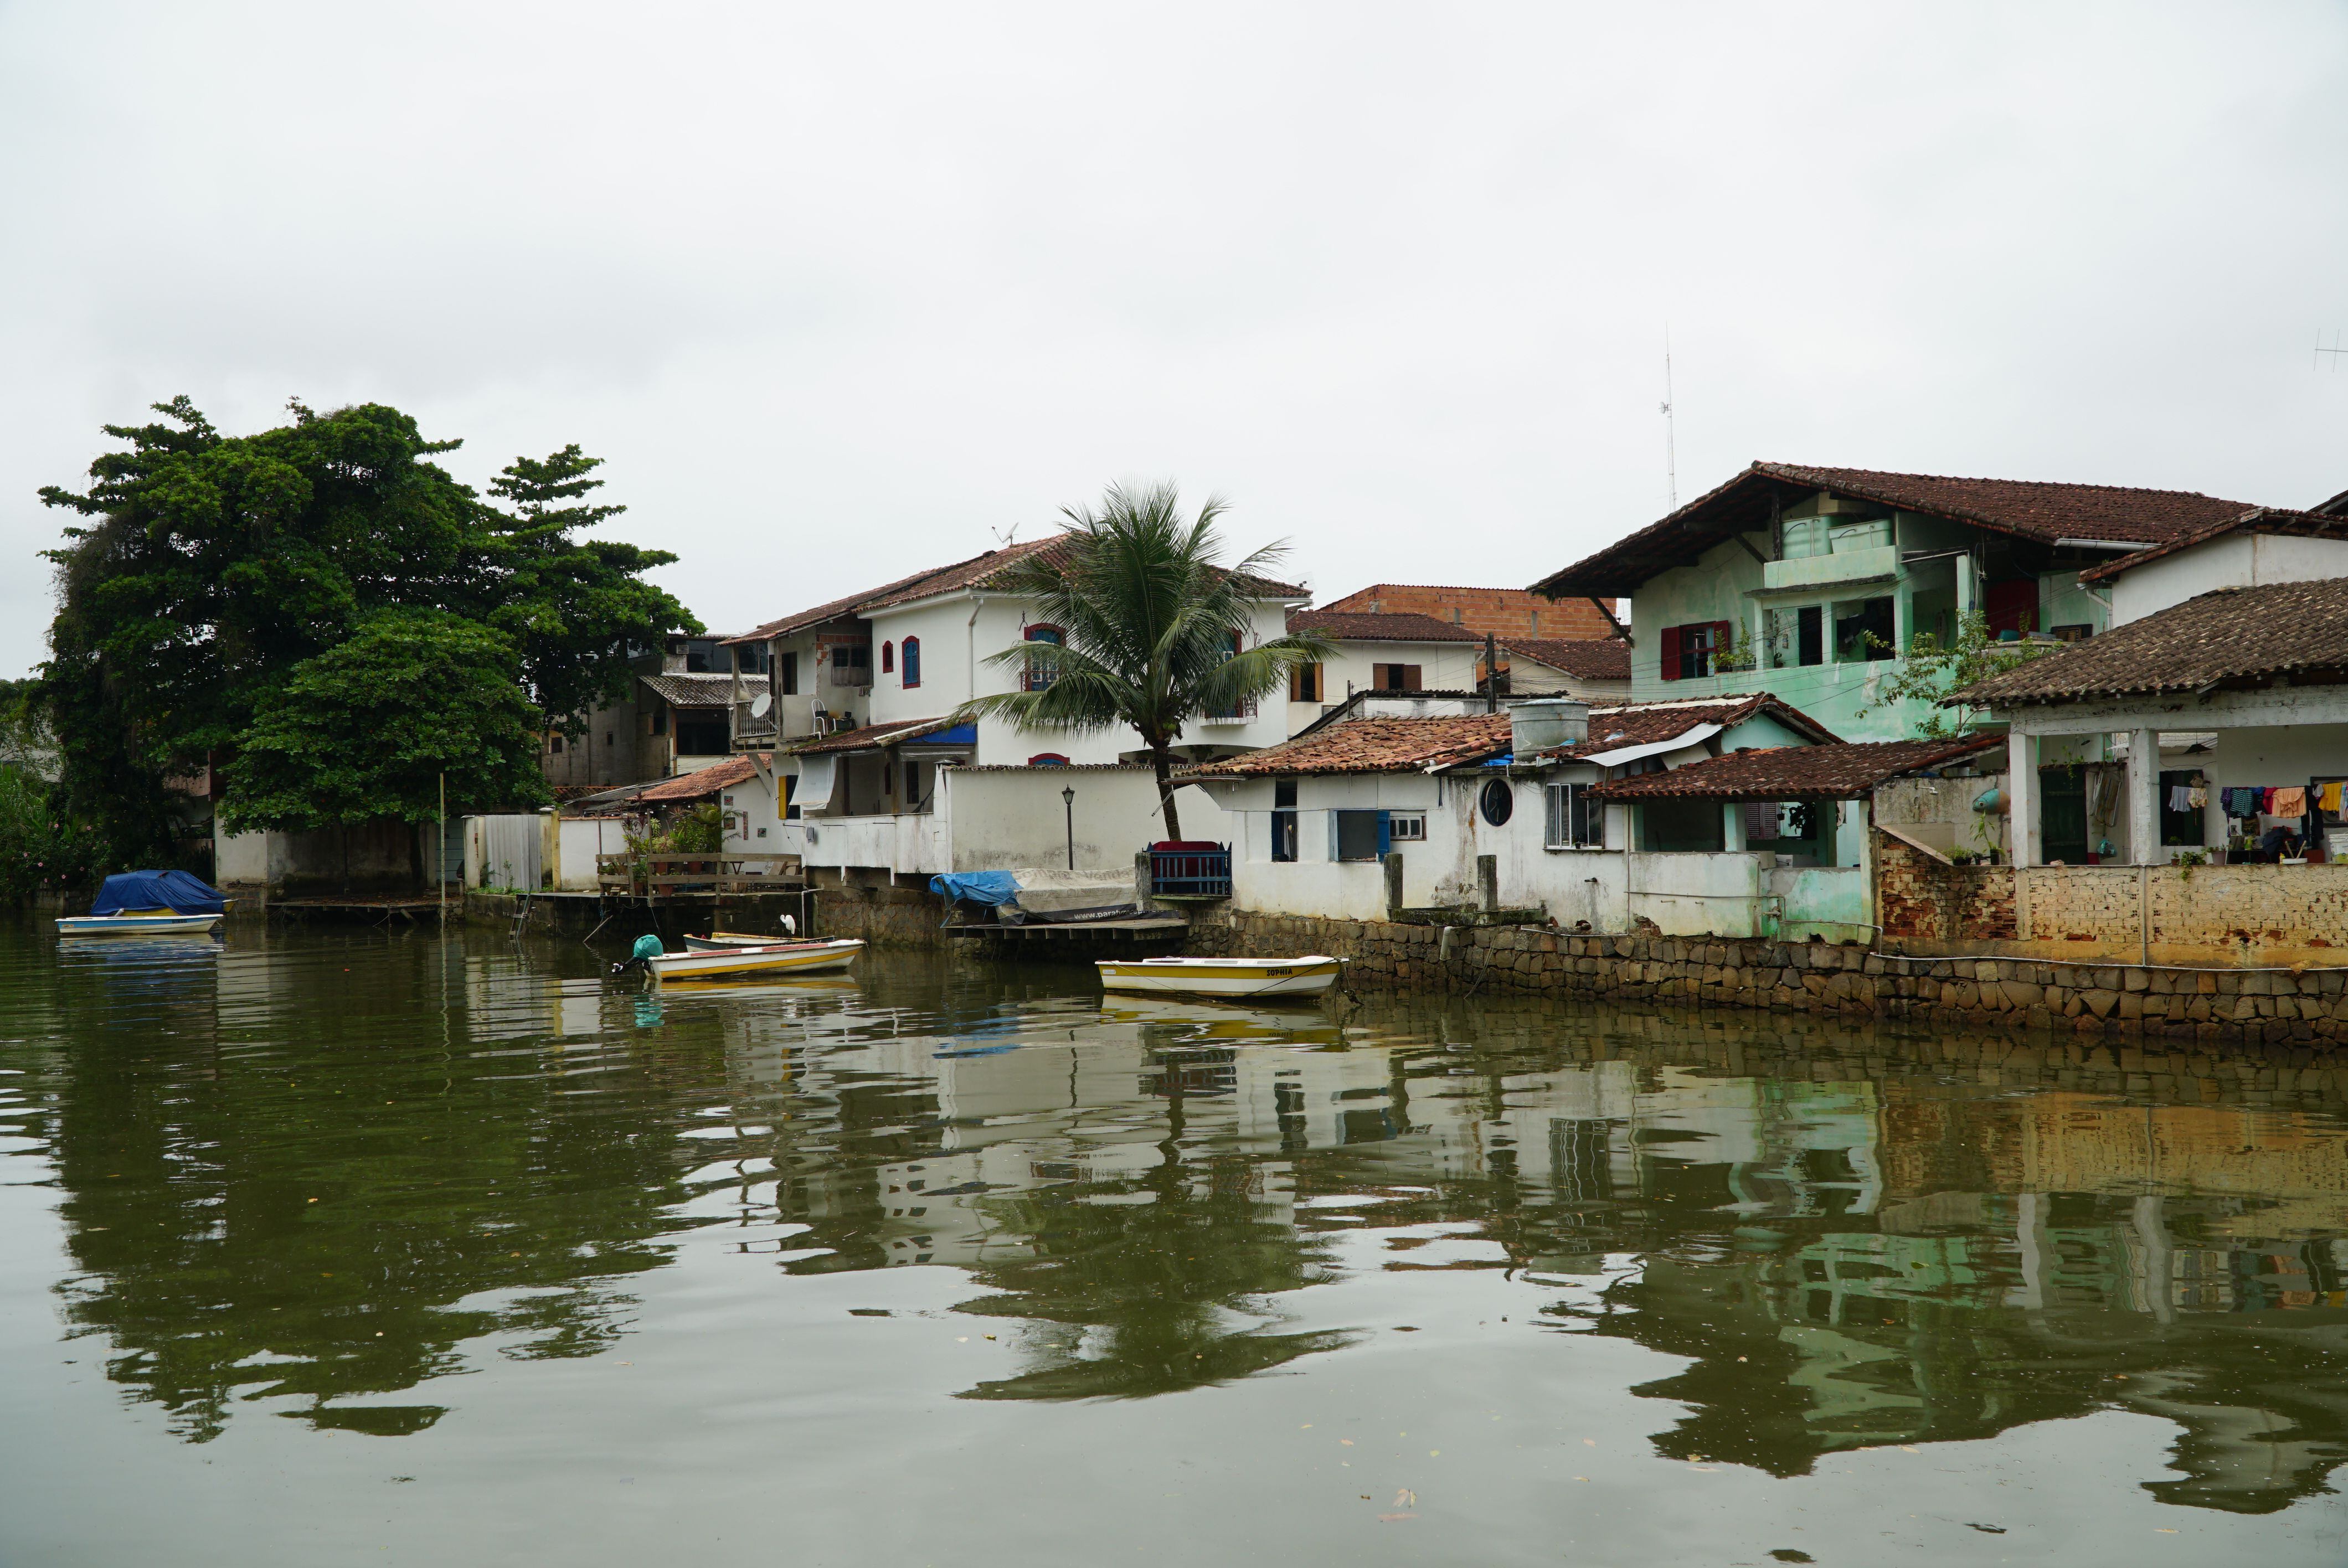 Viviendas en el canal del río Perequê-Açú que pasa contaminado por el centro urbano de Paraty.